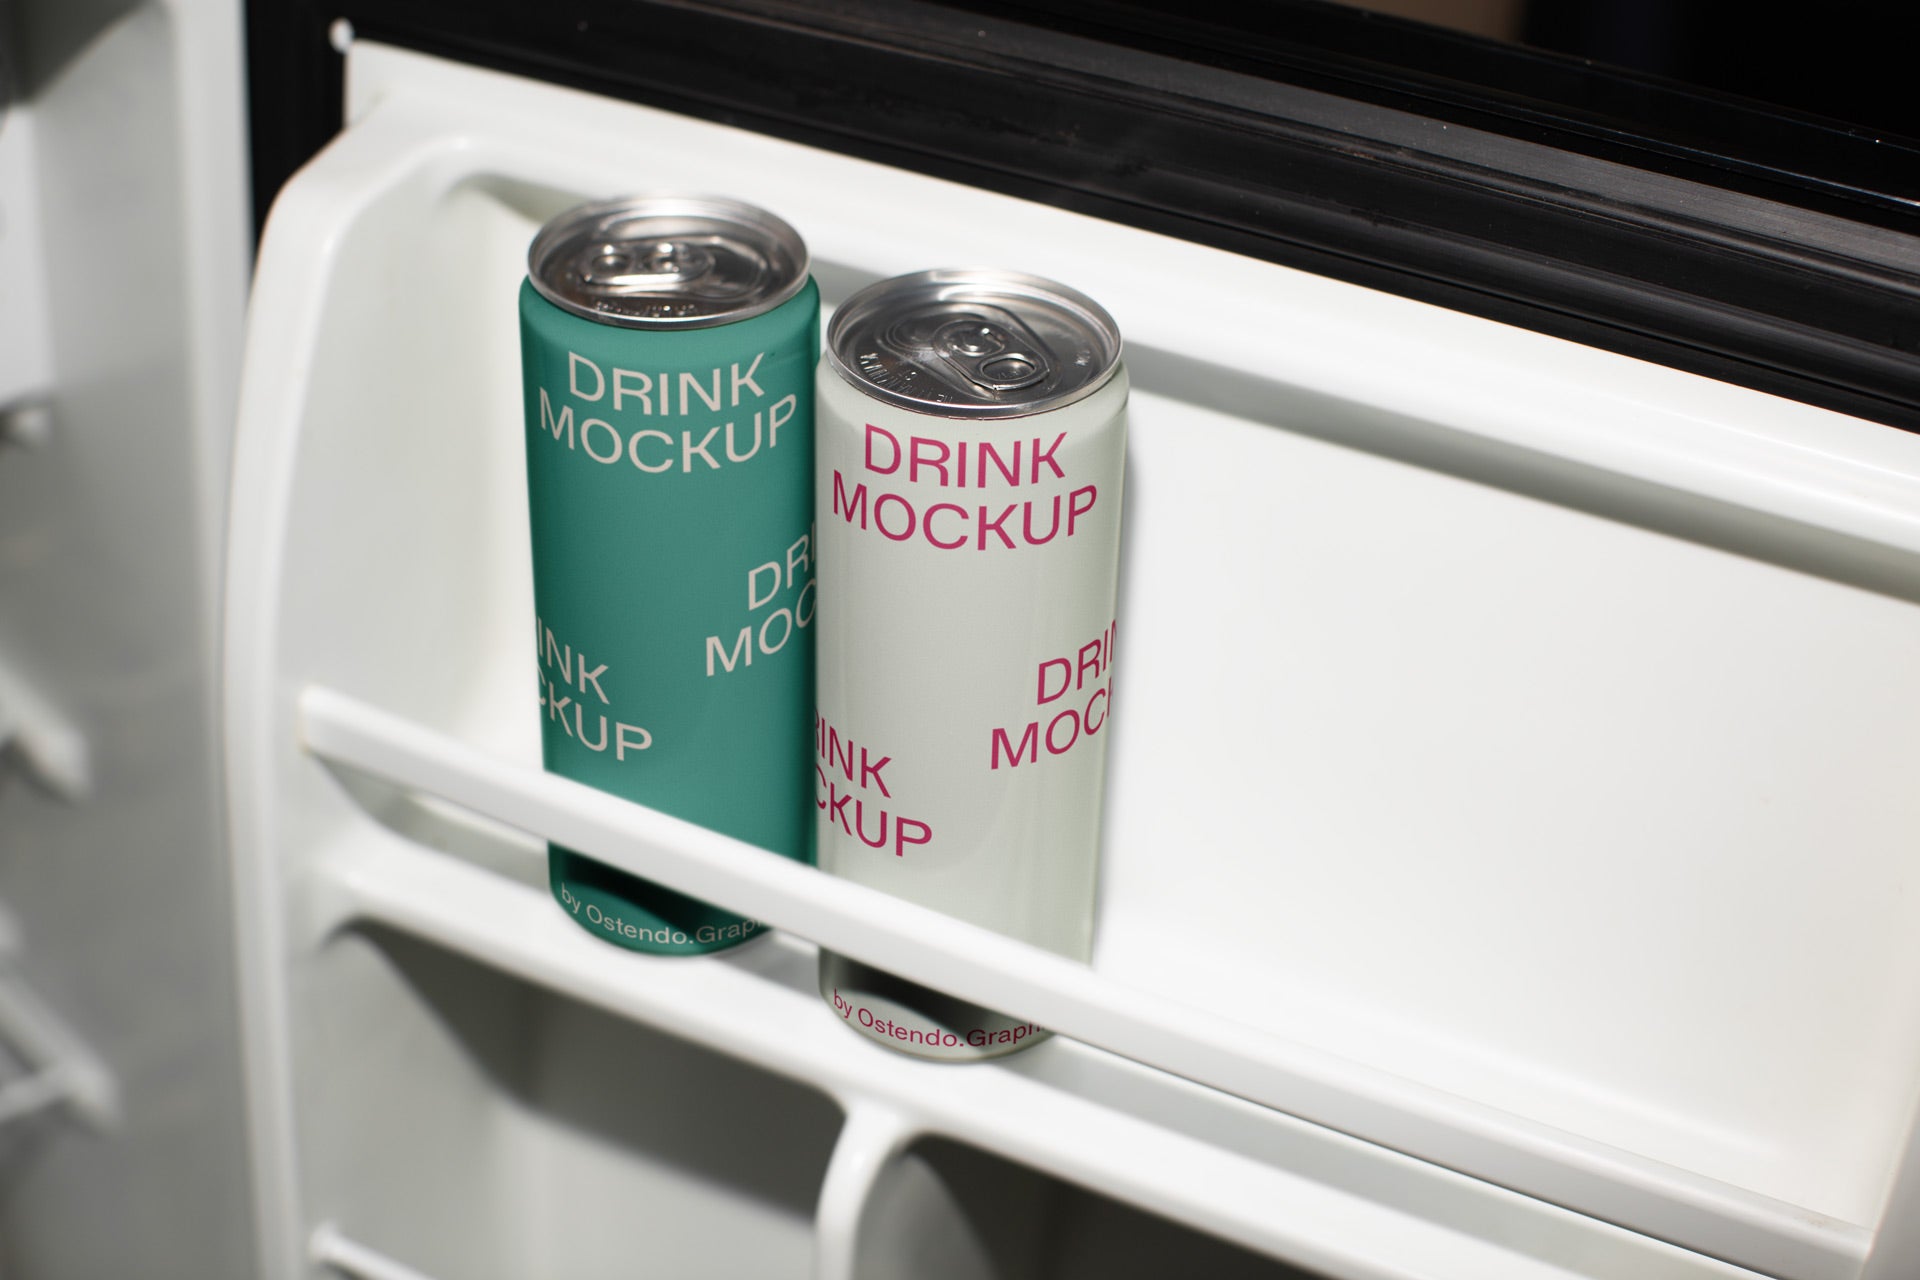 DR23 Drink Cans Mockup - Refrigerator